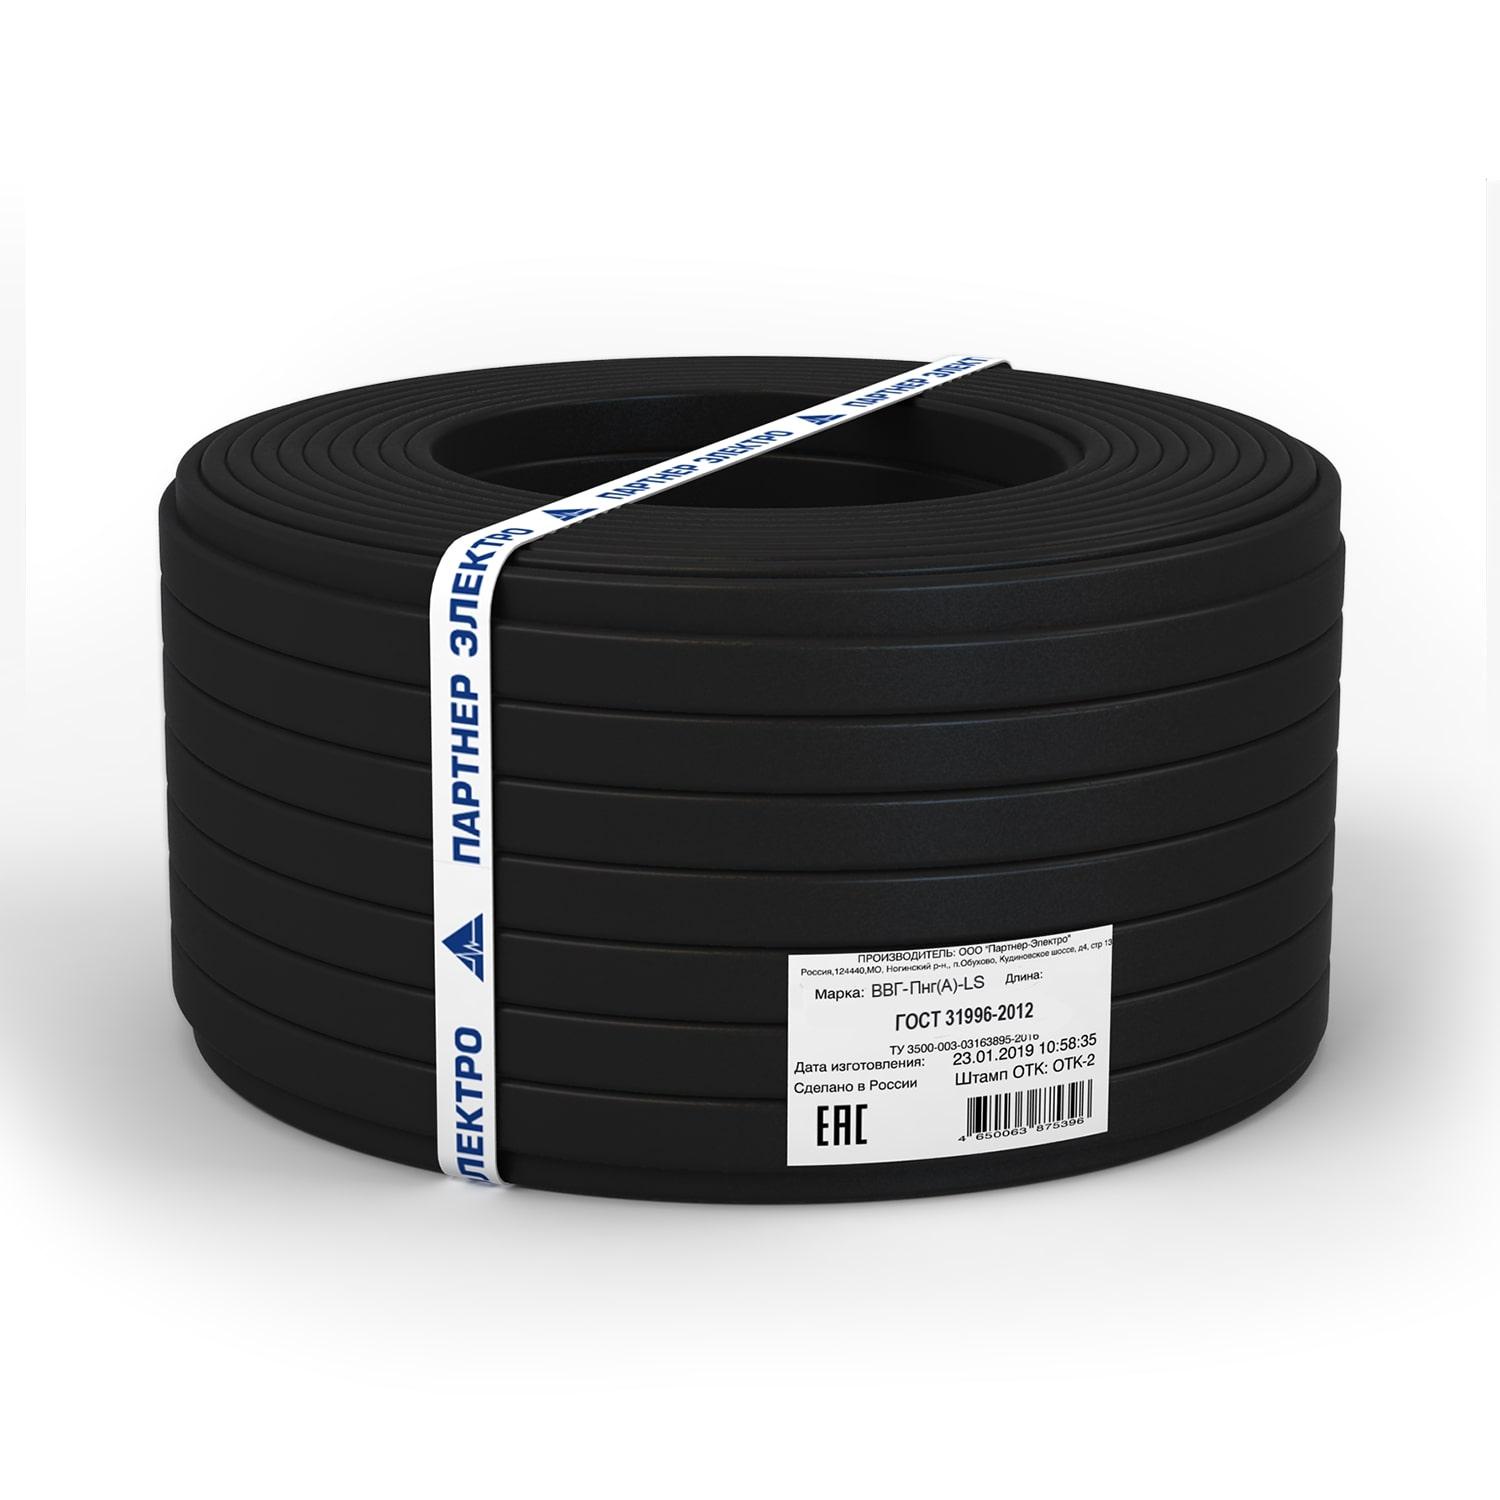 фото Силовой кабель Партнер-Электро Кабель ВВГ-ПнгГОСТ (А)-LS 3х2,5 ГОСТ (10м), черный